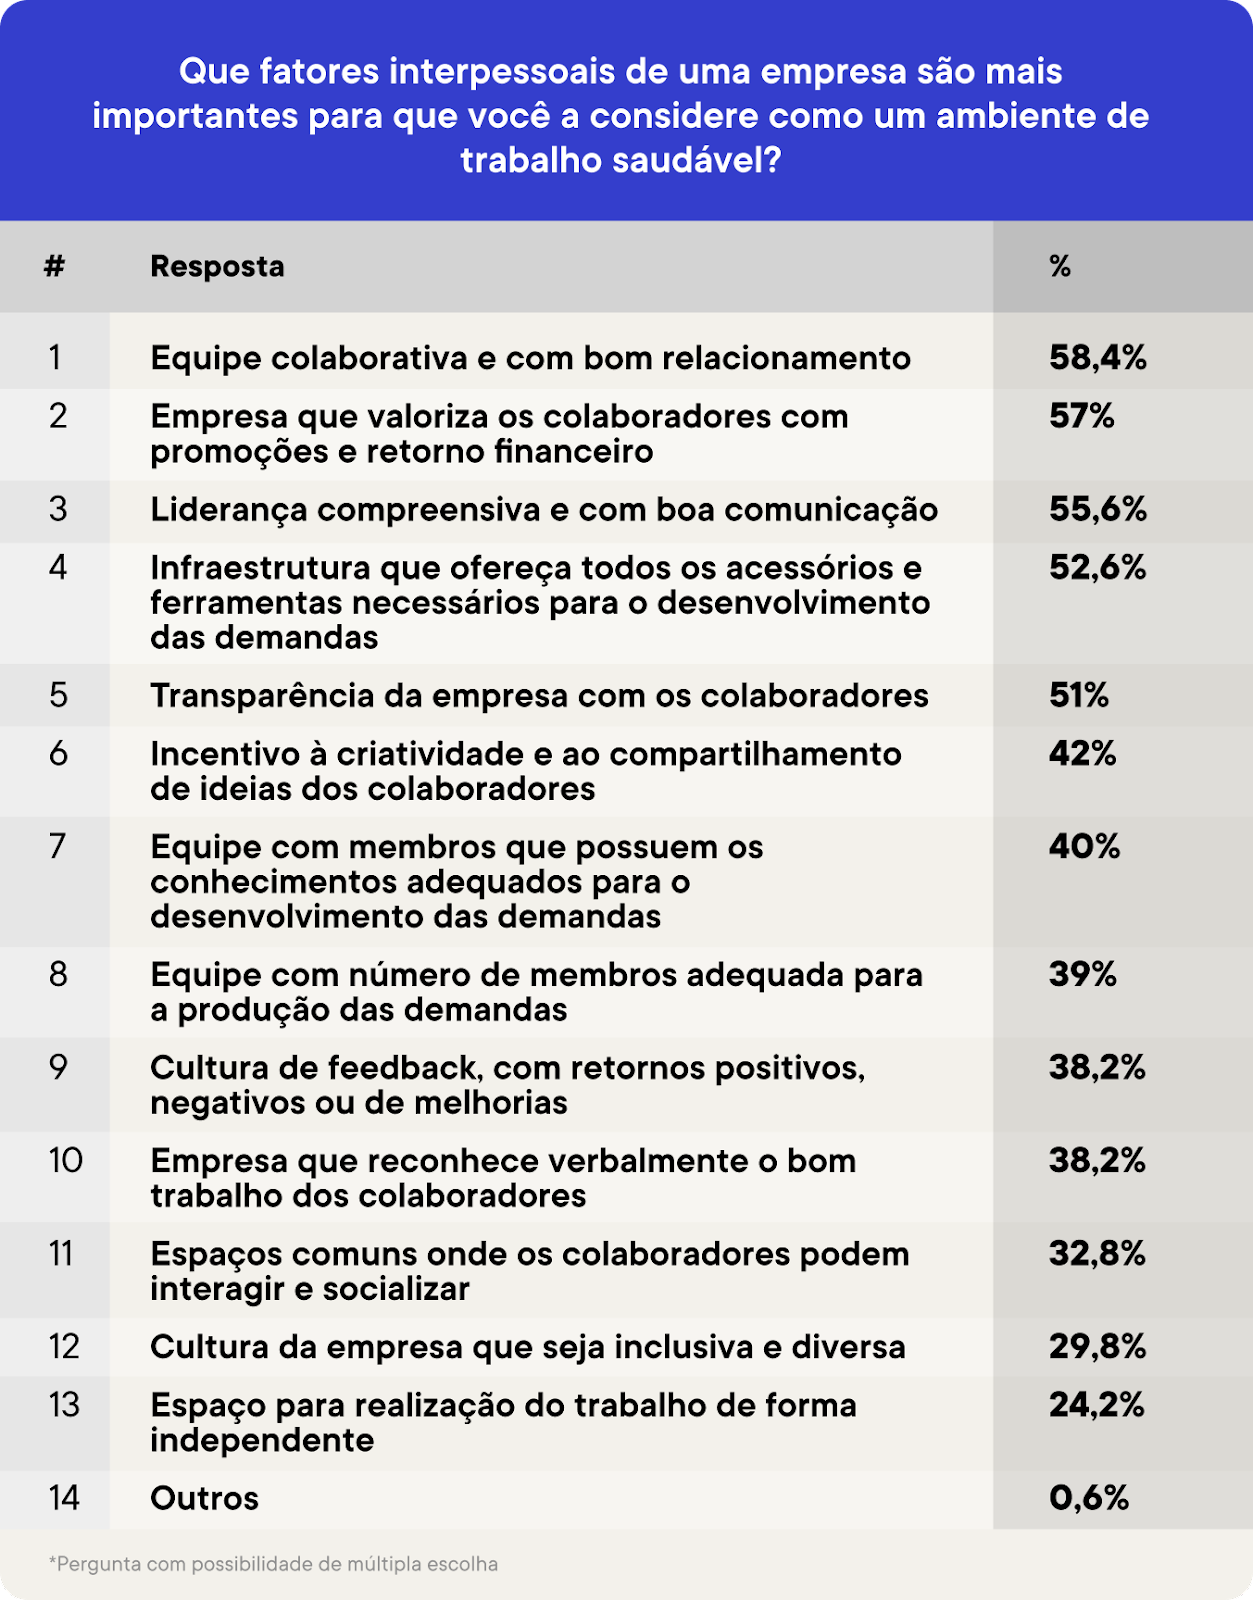 56% dos brasileiros priorizam ambiente de trabalho saudável para permanecer no emprego